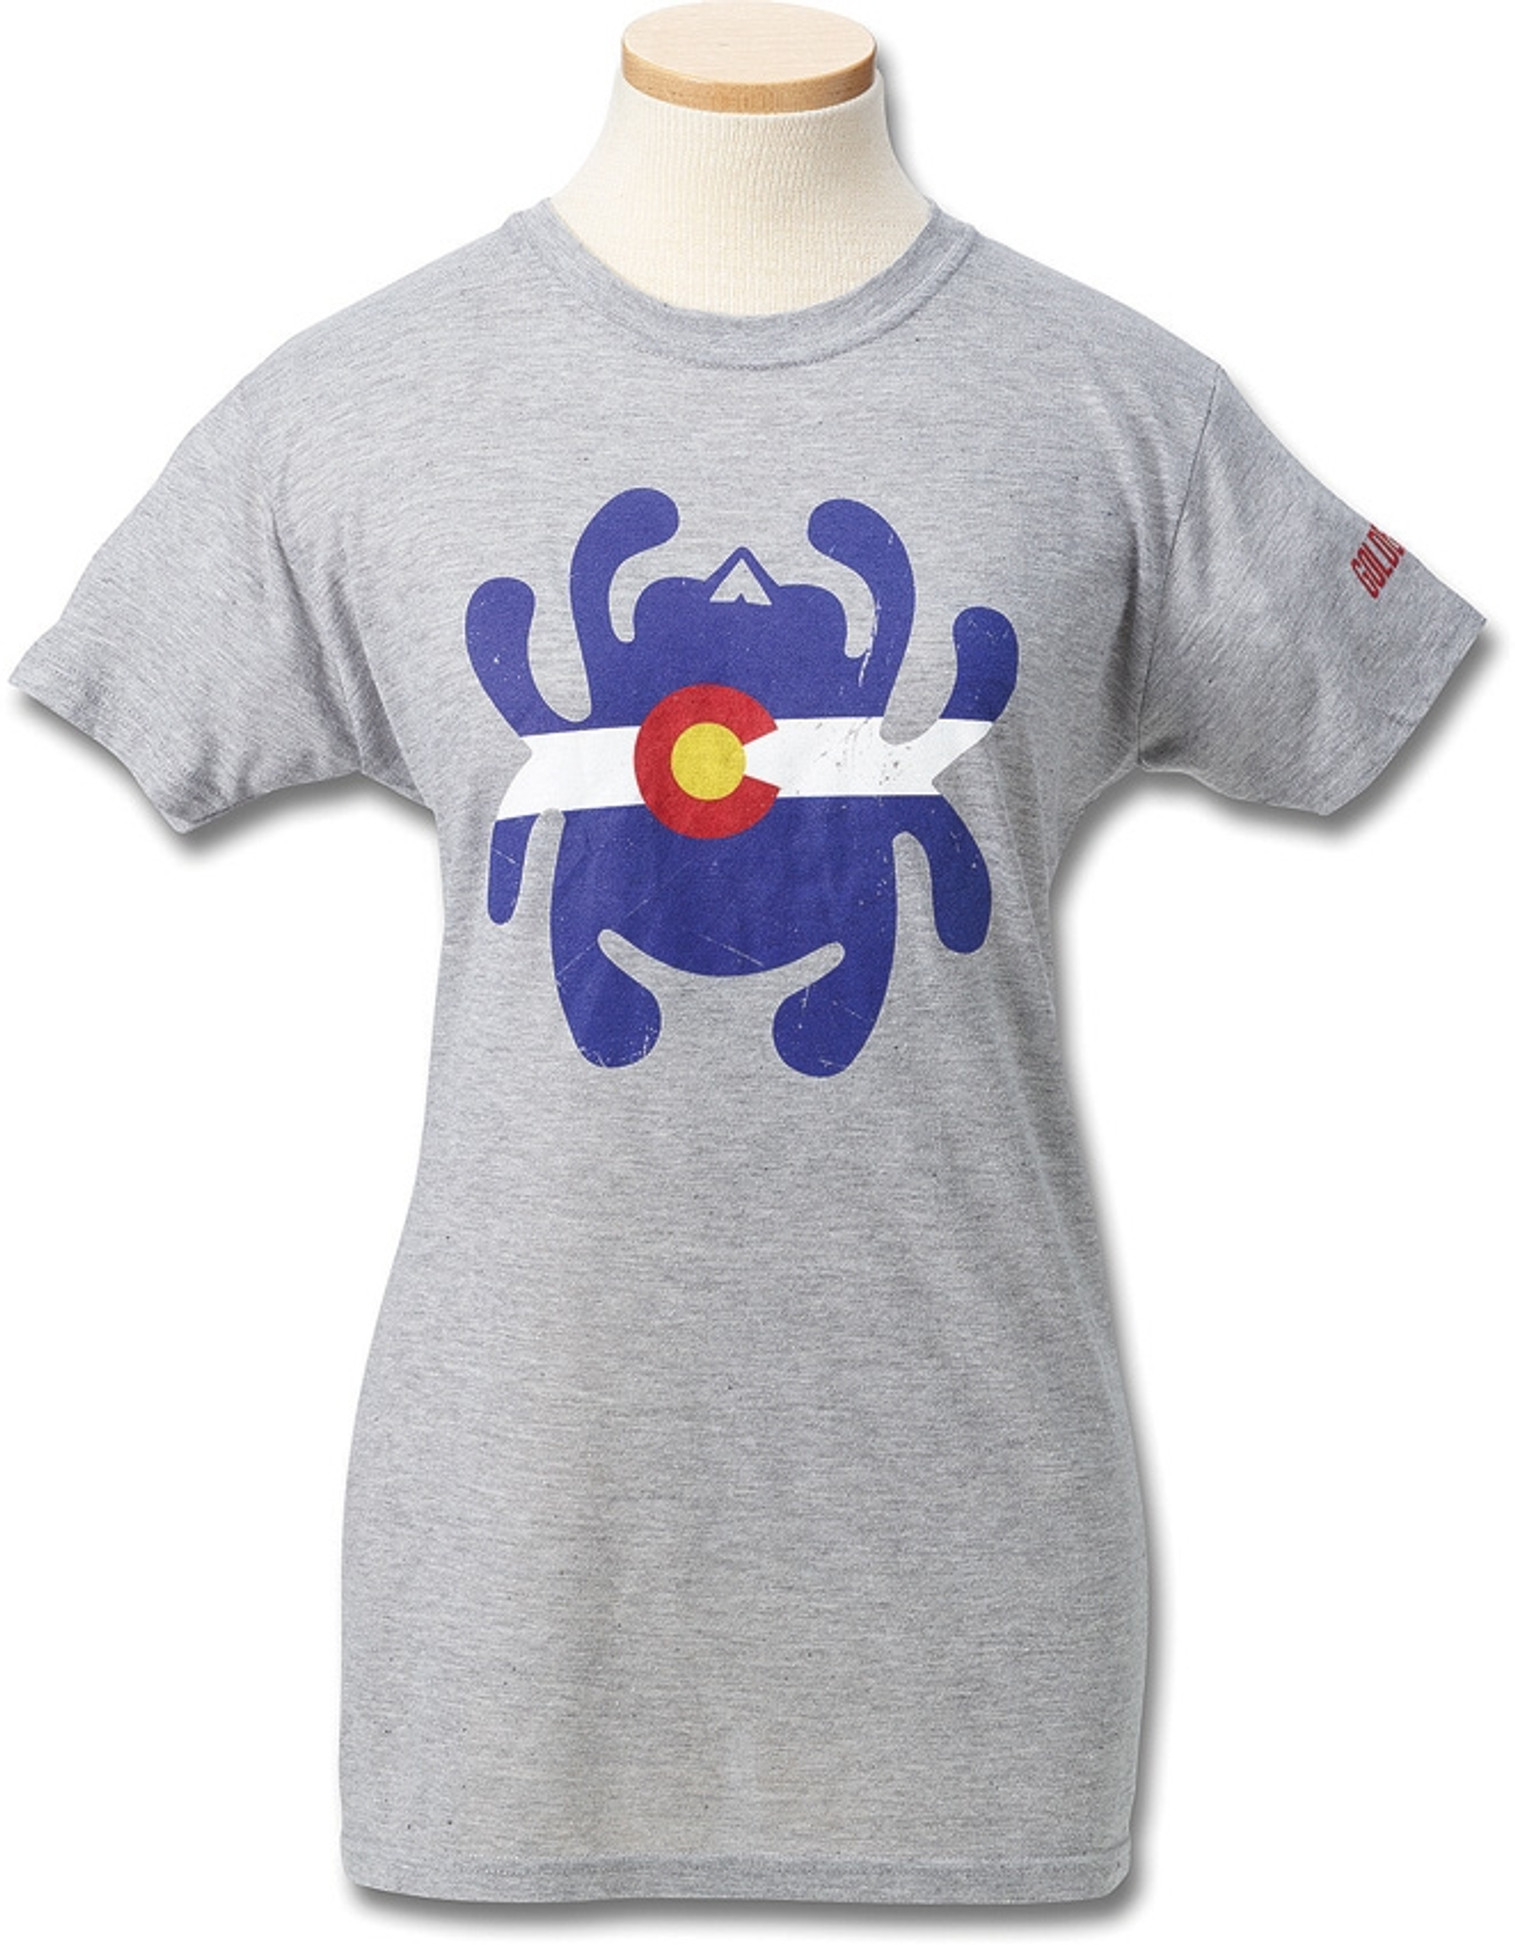 Womens T-Shirt Colorado S